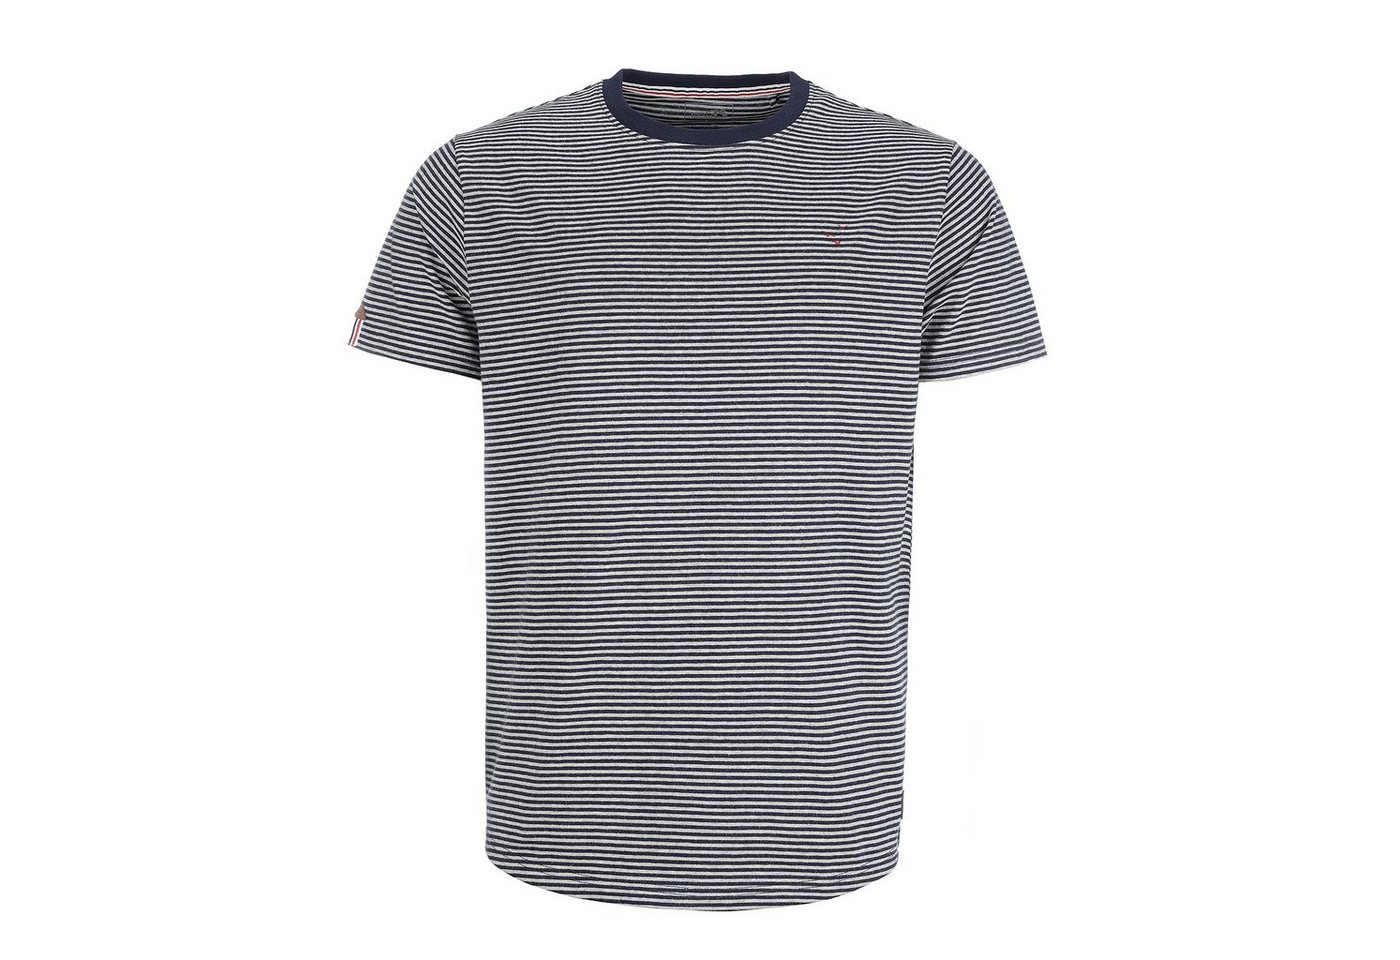 modAS T-Shirt Herren Shirt gestreift - Kurzarm-Shirt mit Streifen aus Baumwolle von modAS